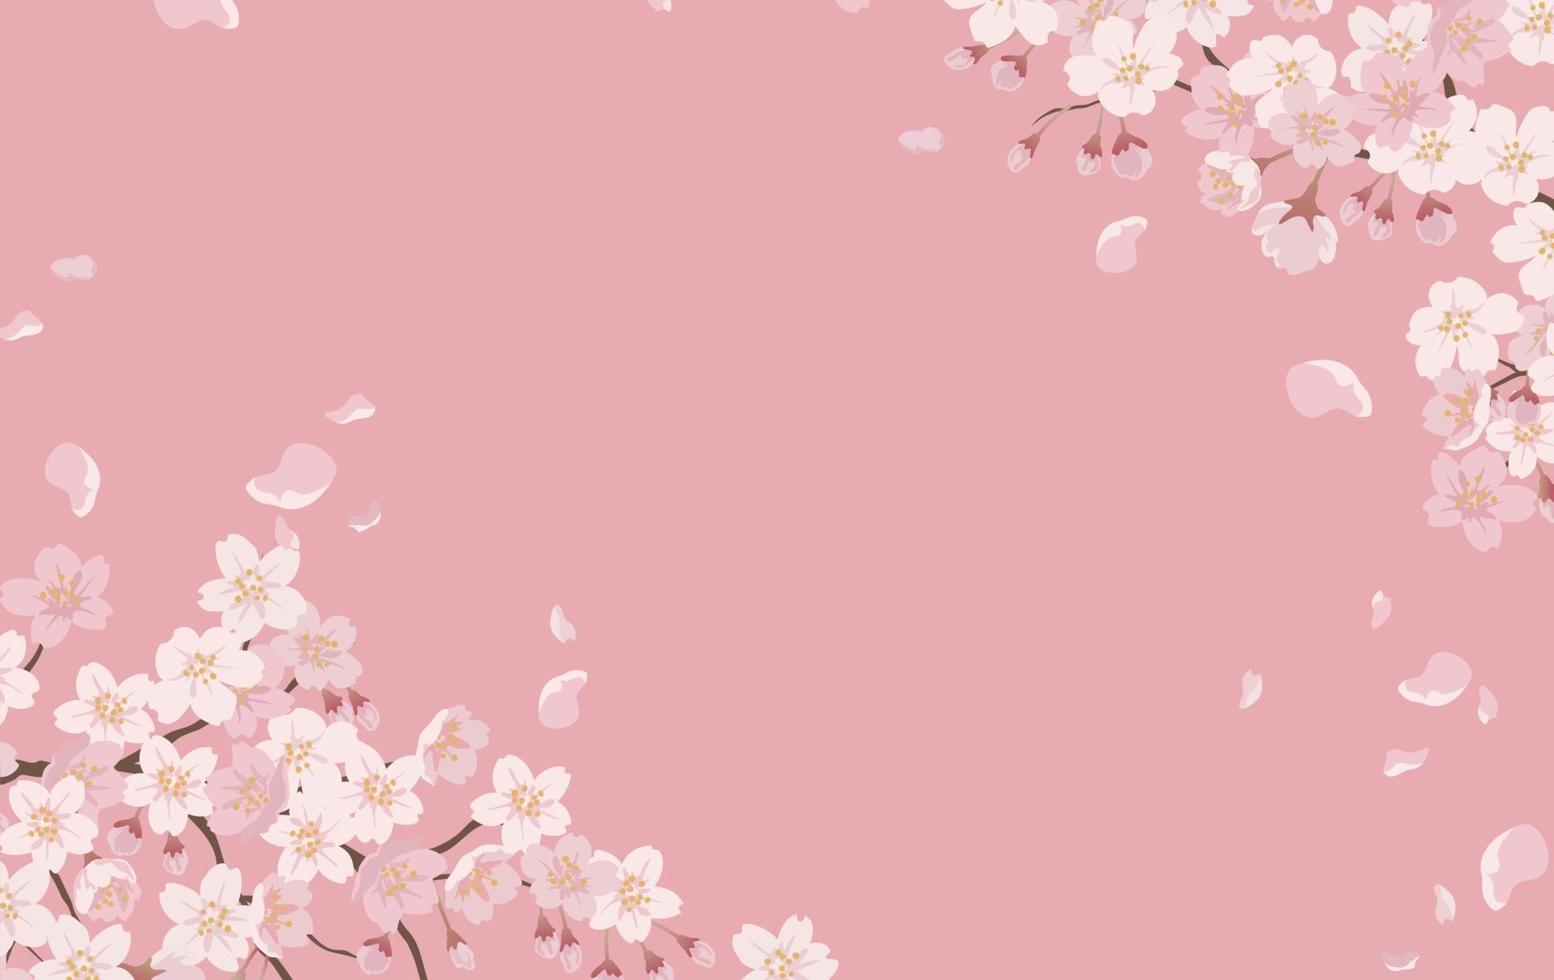 sfondo floreale con fiori di ciliegio in piena fioritura su uno sfondo rosa. vettore